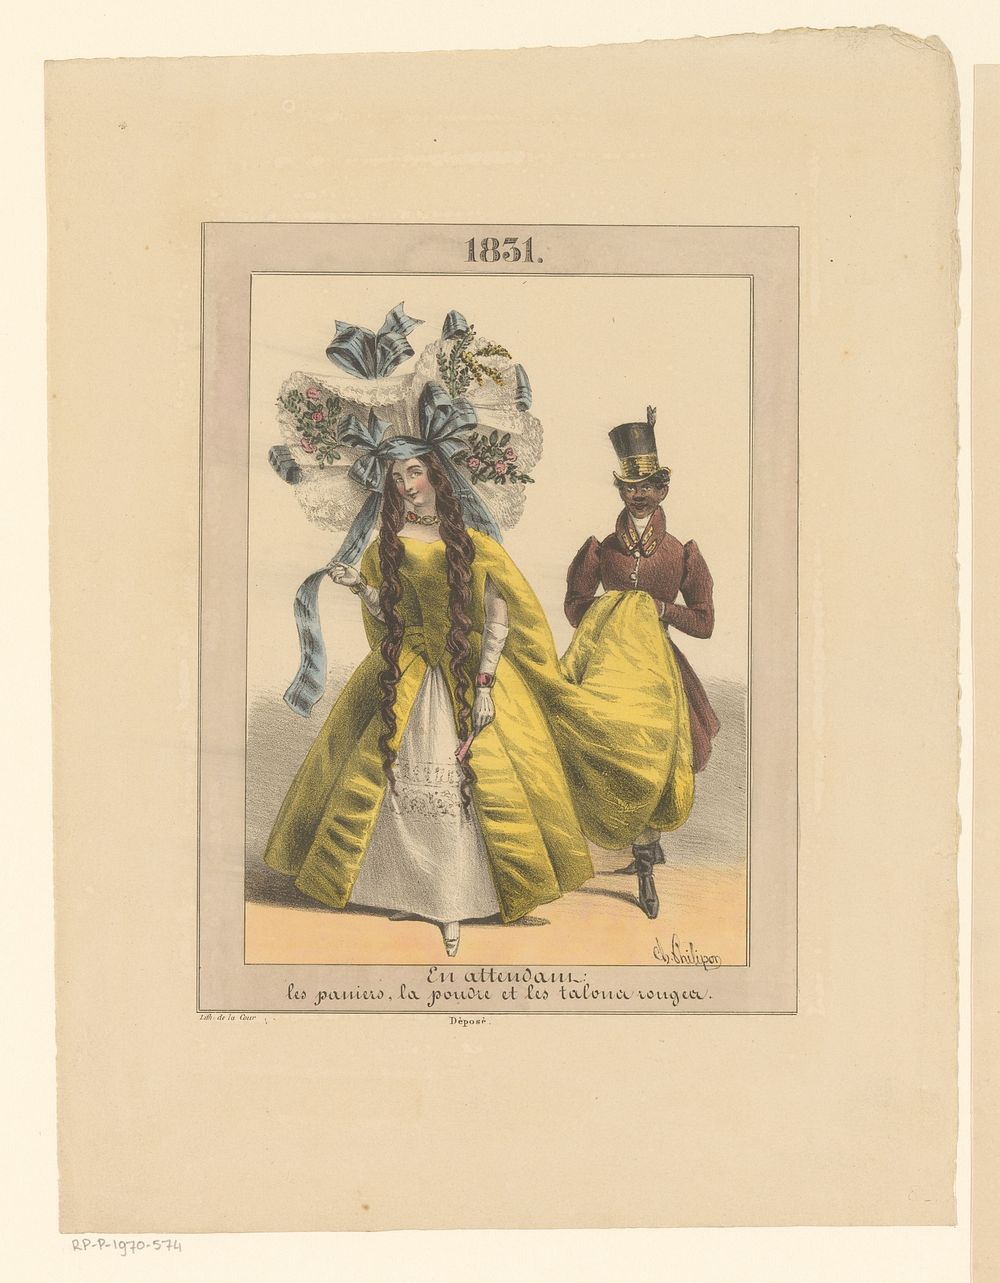 Vrouw met grote hoed op samen met bediende (1831) by Charles Philipon and Jules Delacour